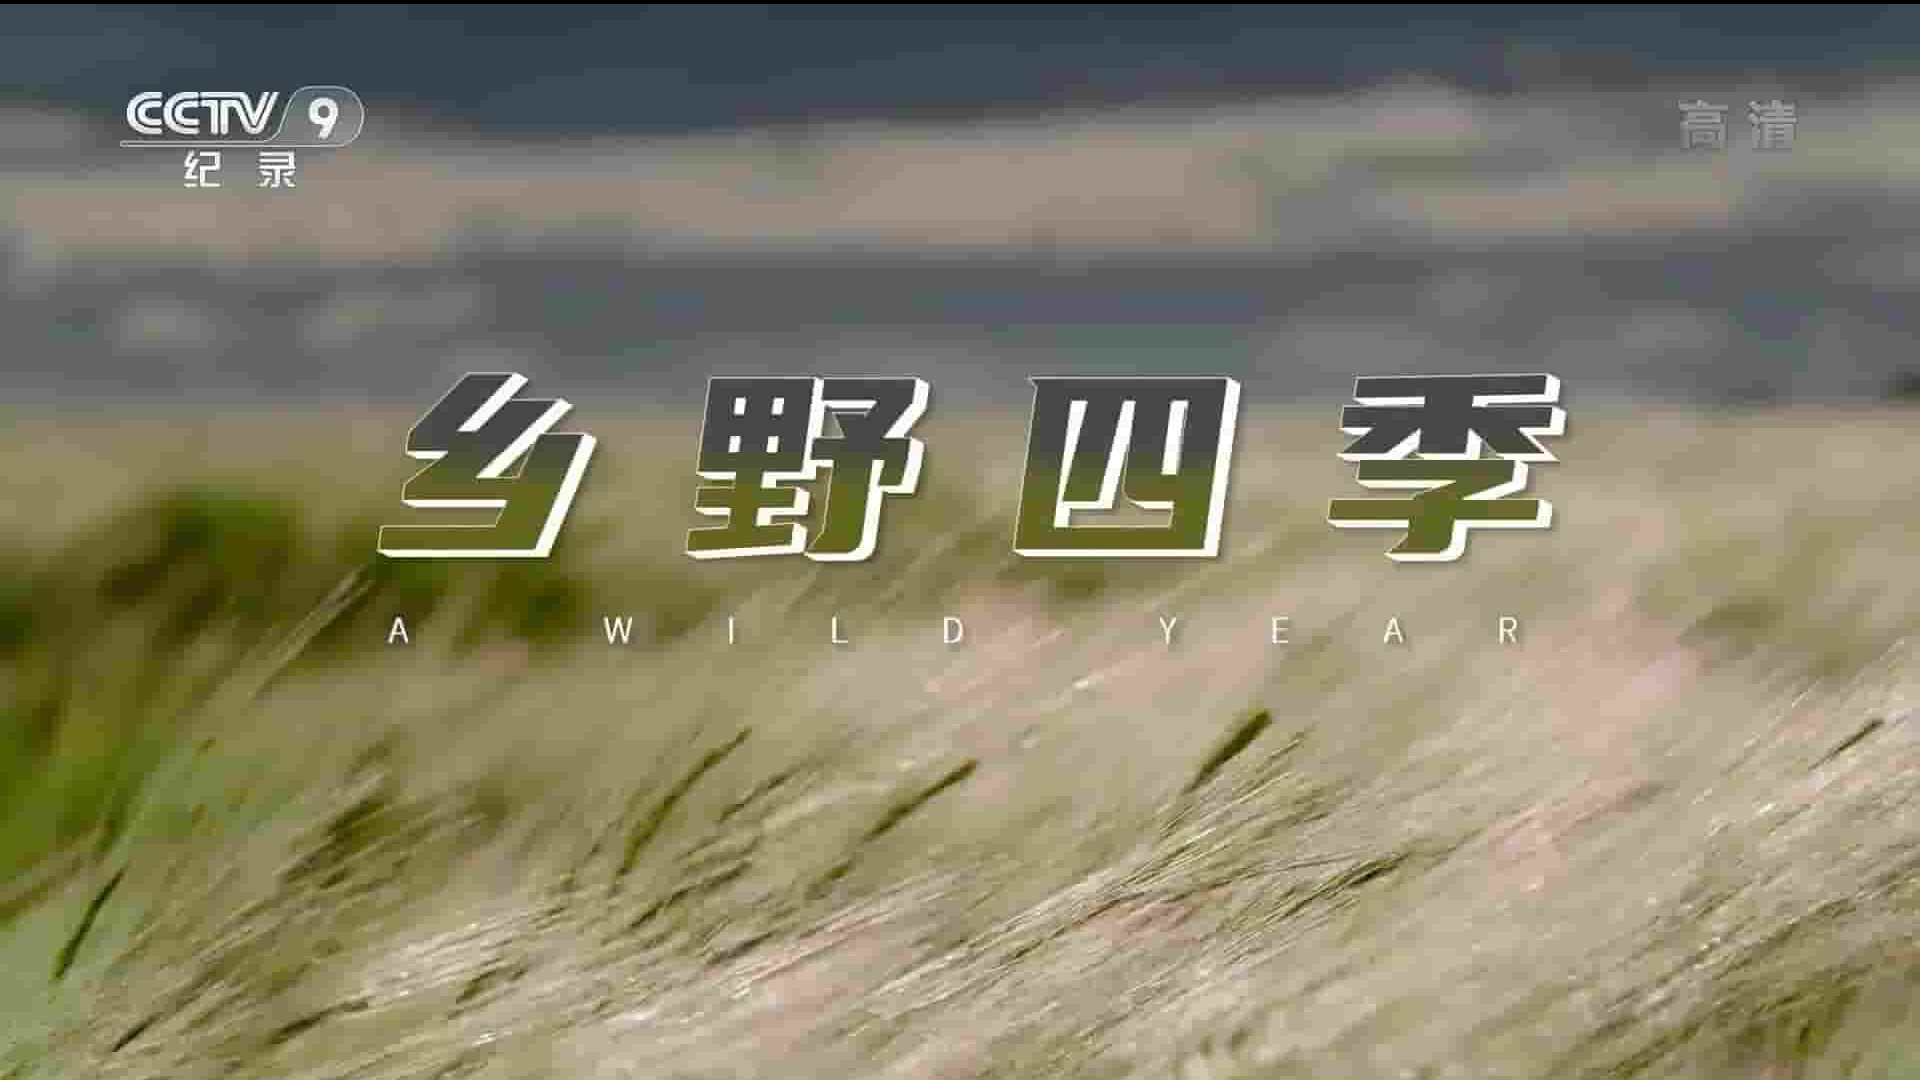 BBC纪录片《英伦狂野之年/乡野四季 A Wild Year 2020》全3集 国语中字 1080P高清网盘下载